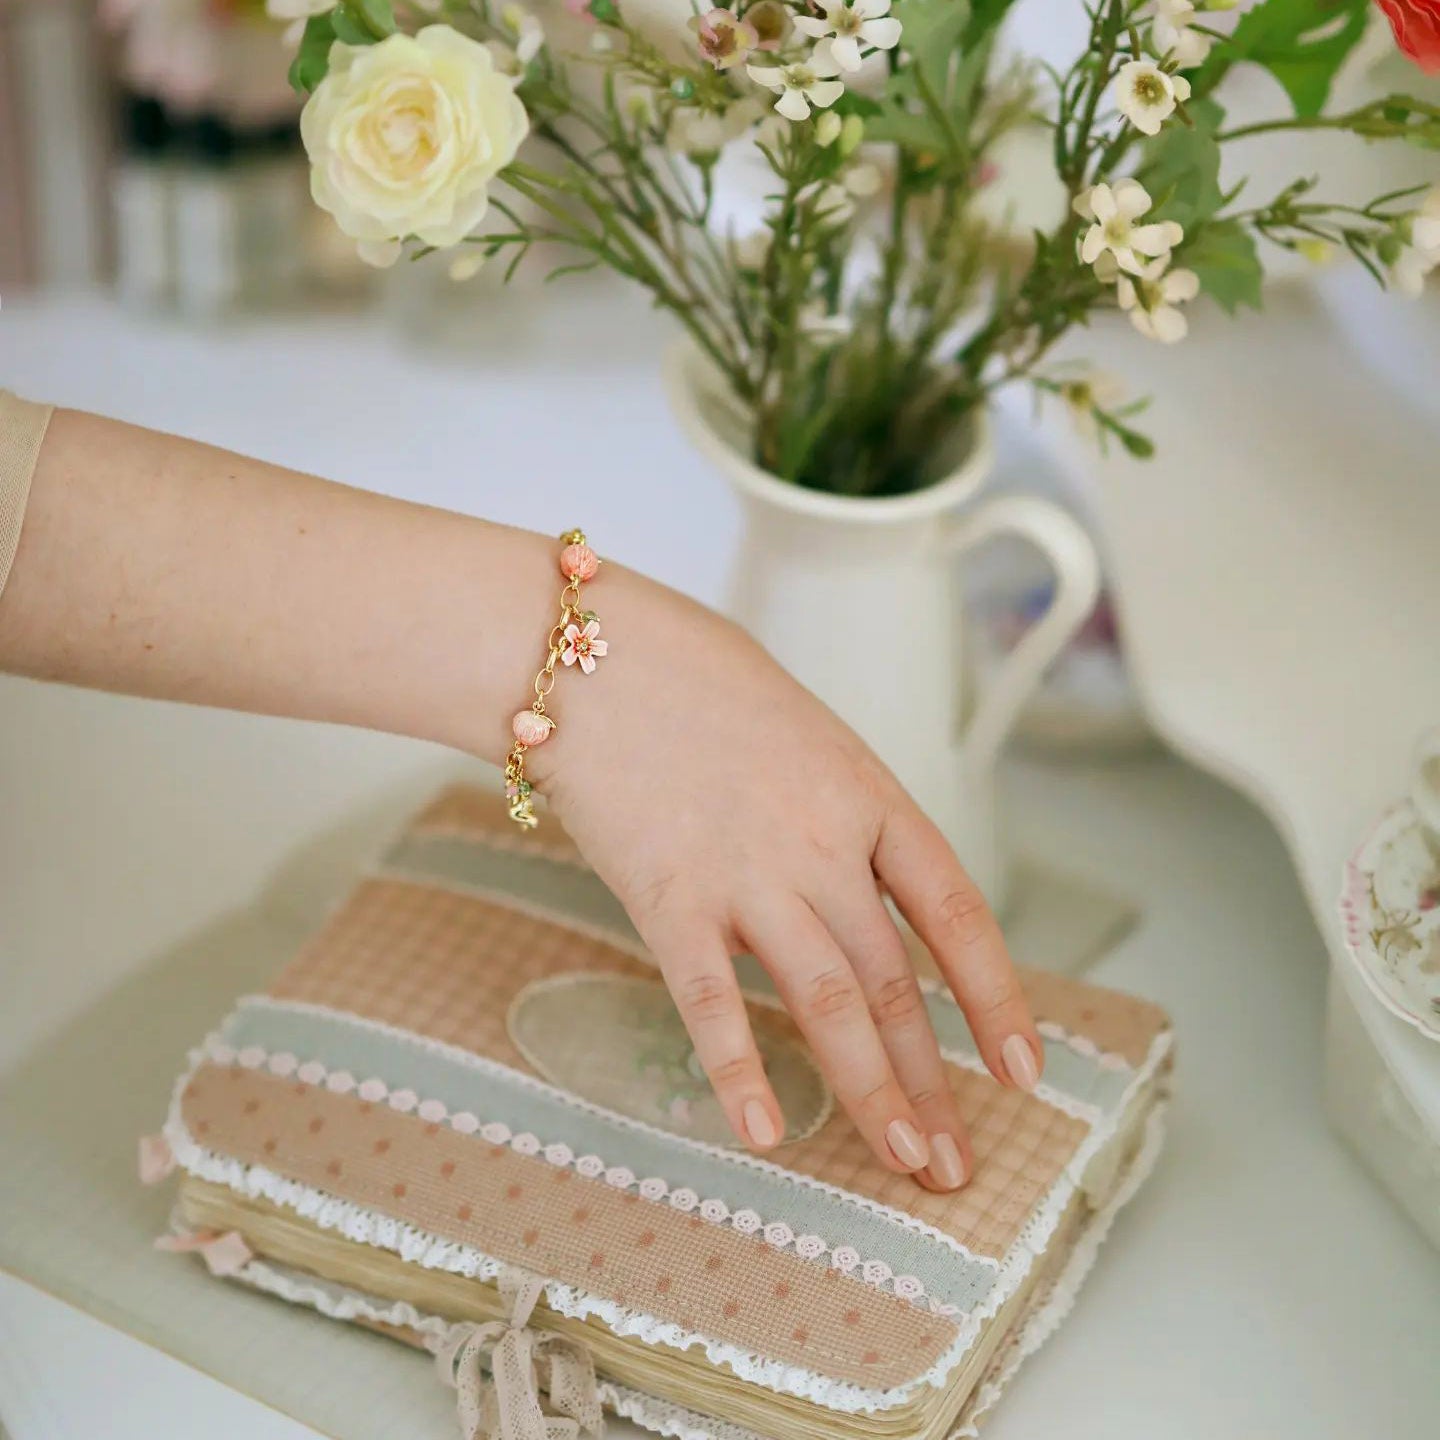 peach blossom bracelet for influencer